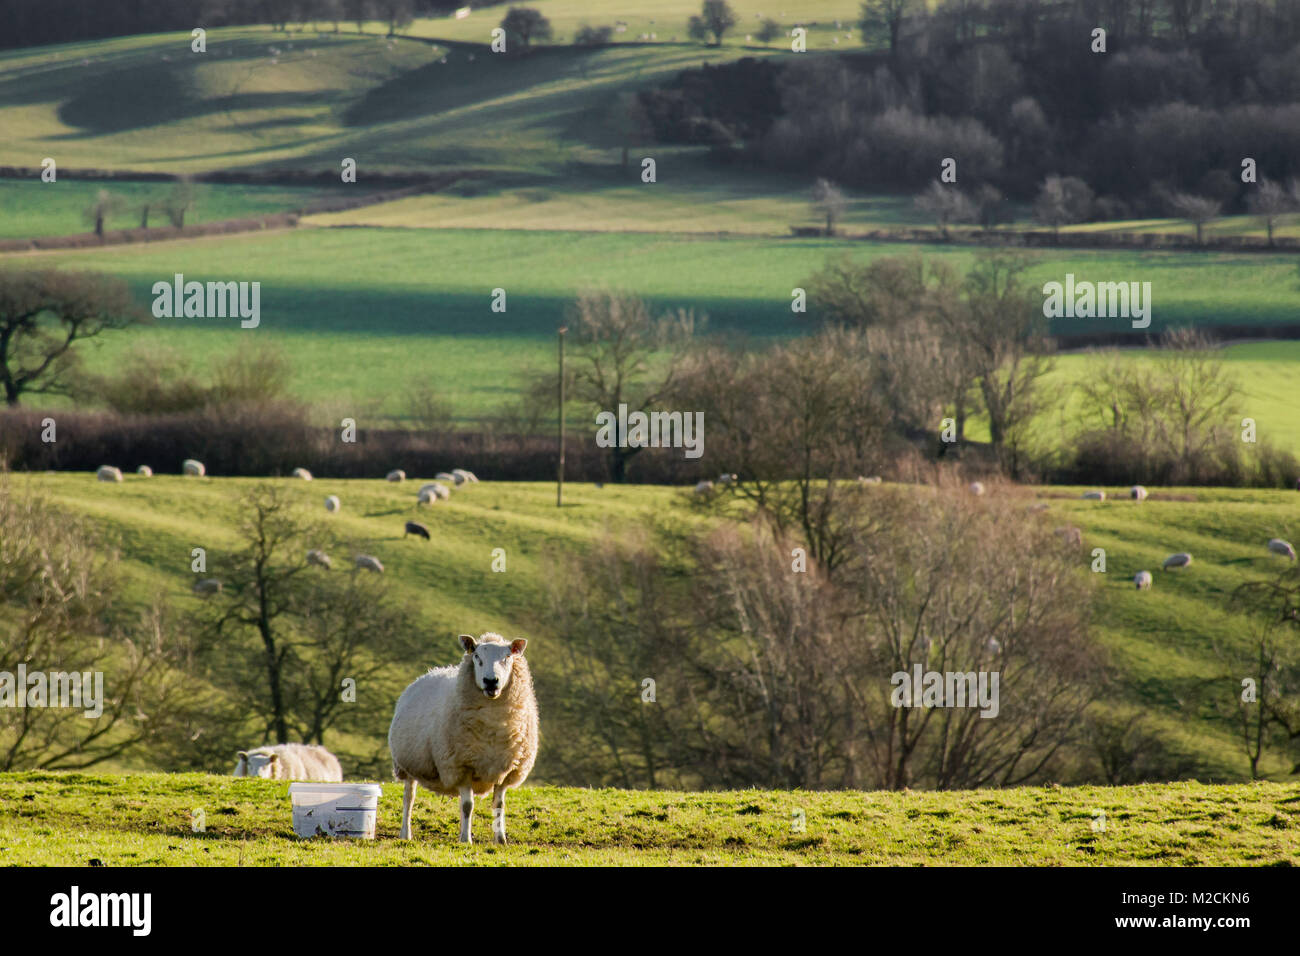 Ein Schaf stehend auf einem Feld mit einer hügeligen Landschaft im Hintergrund Stockfoto